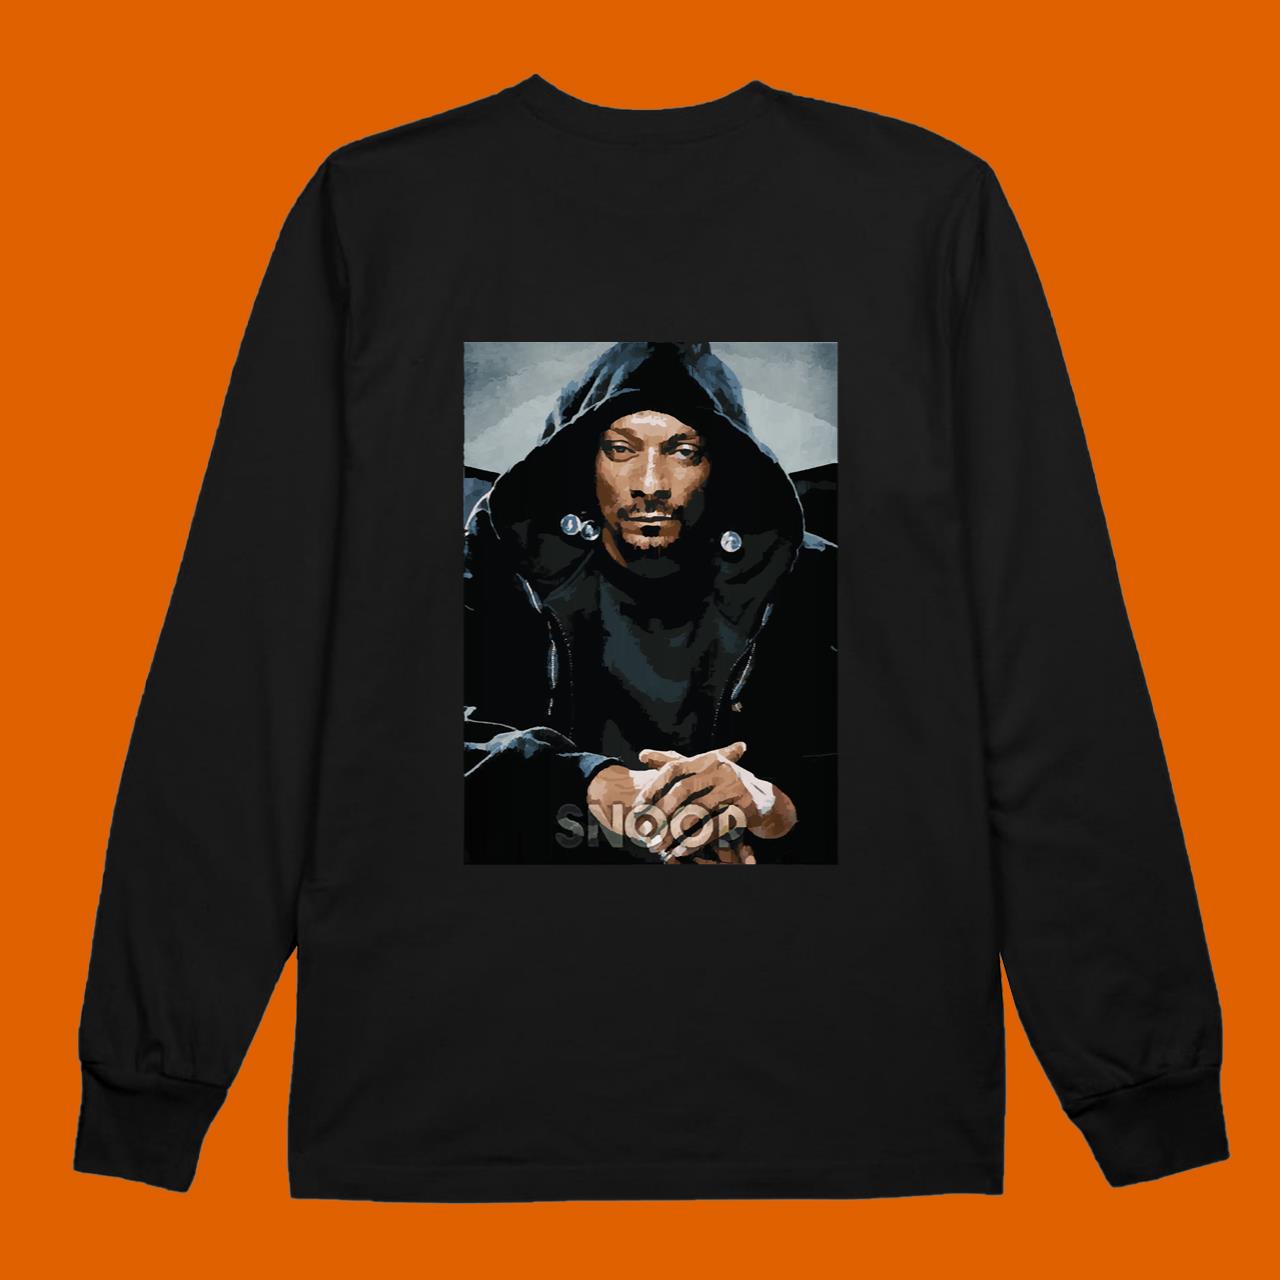 Rapper Snoop T-Shirt